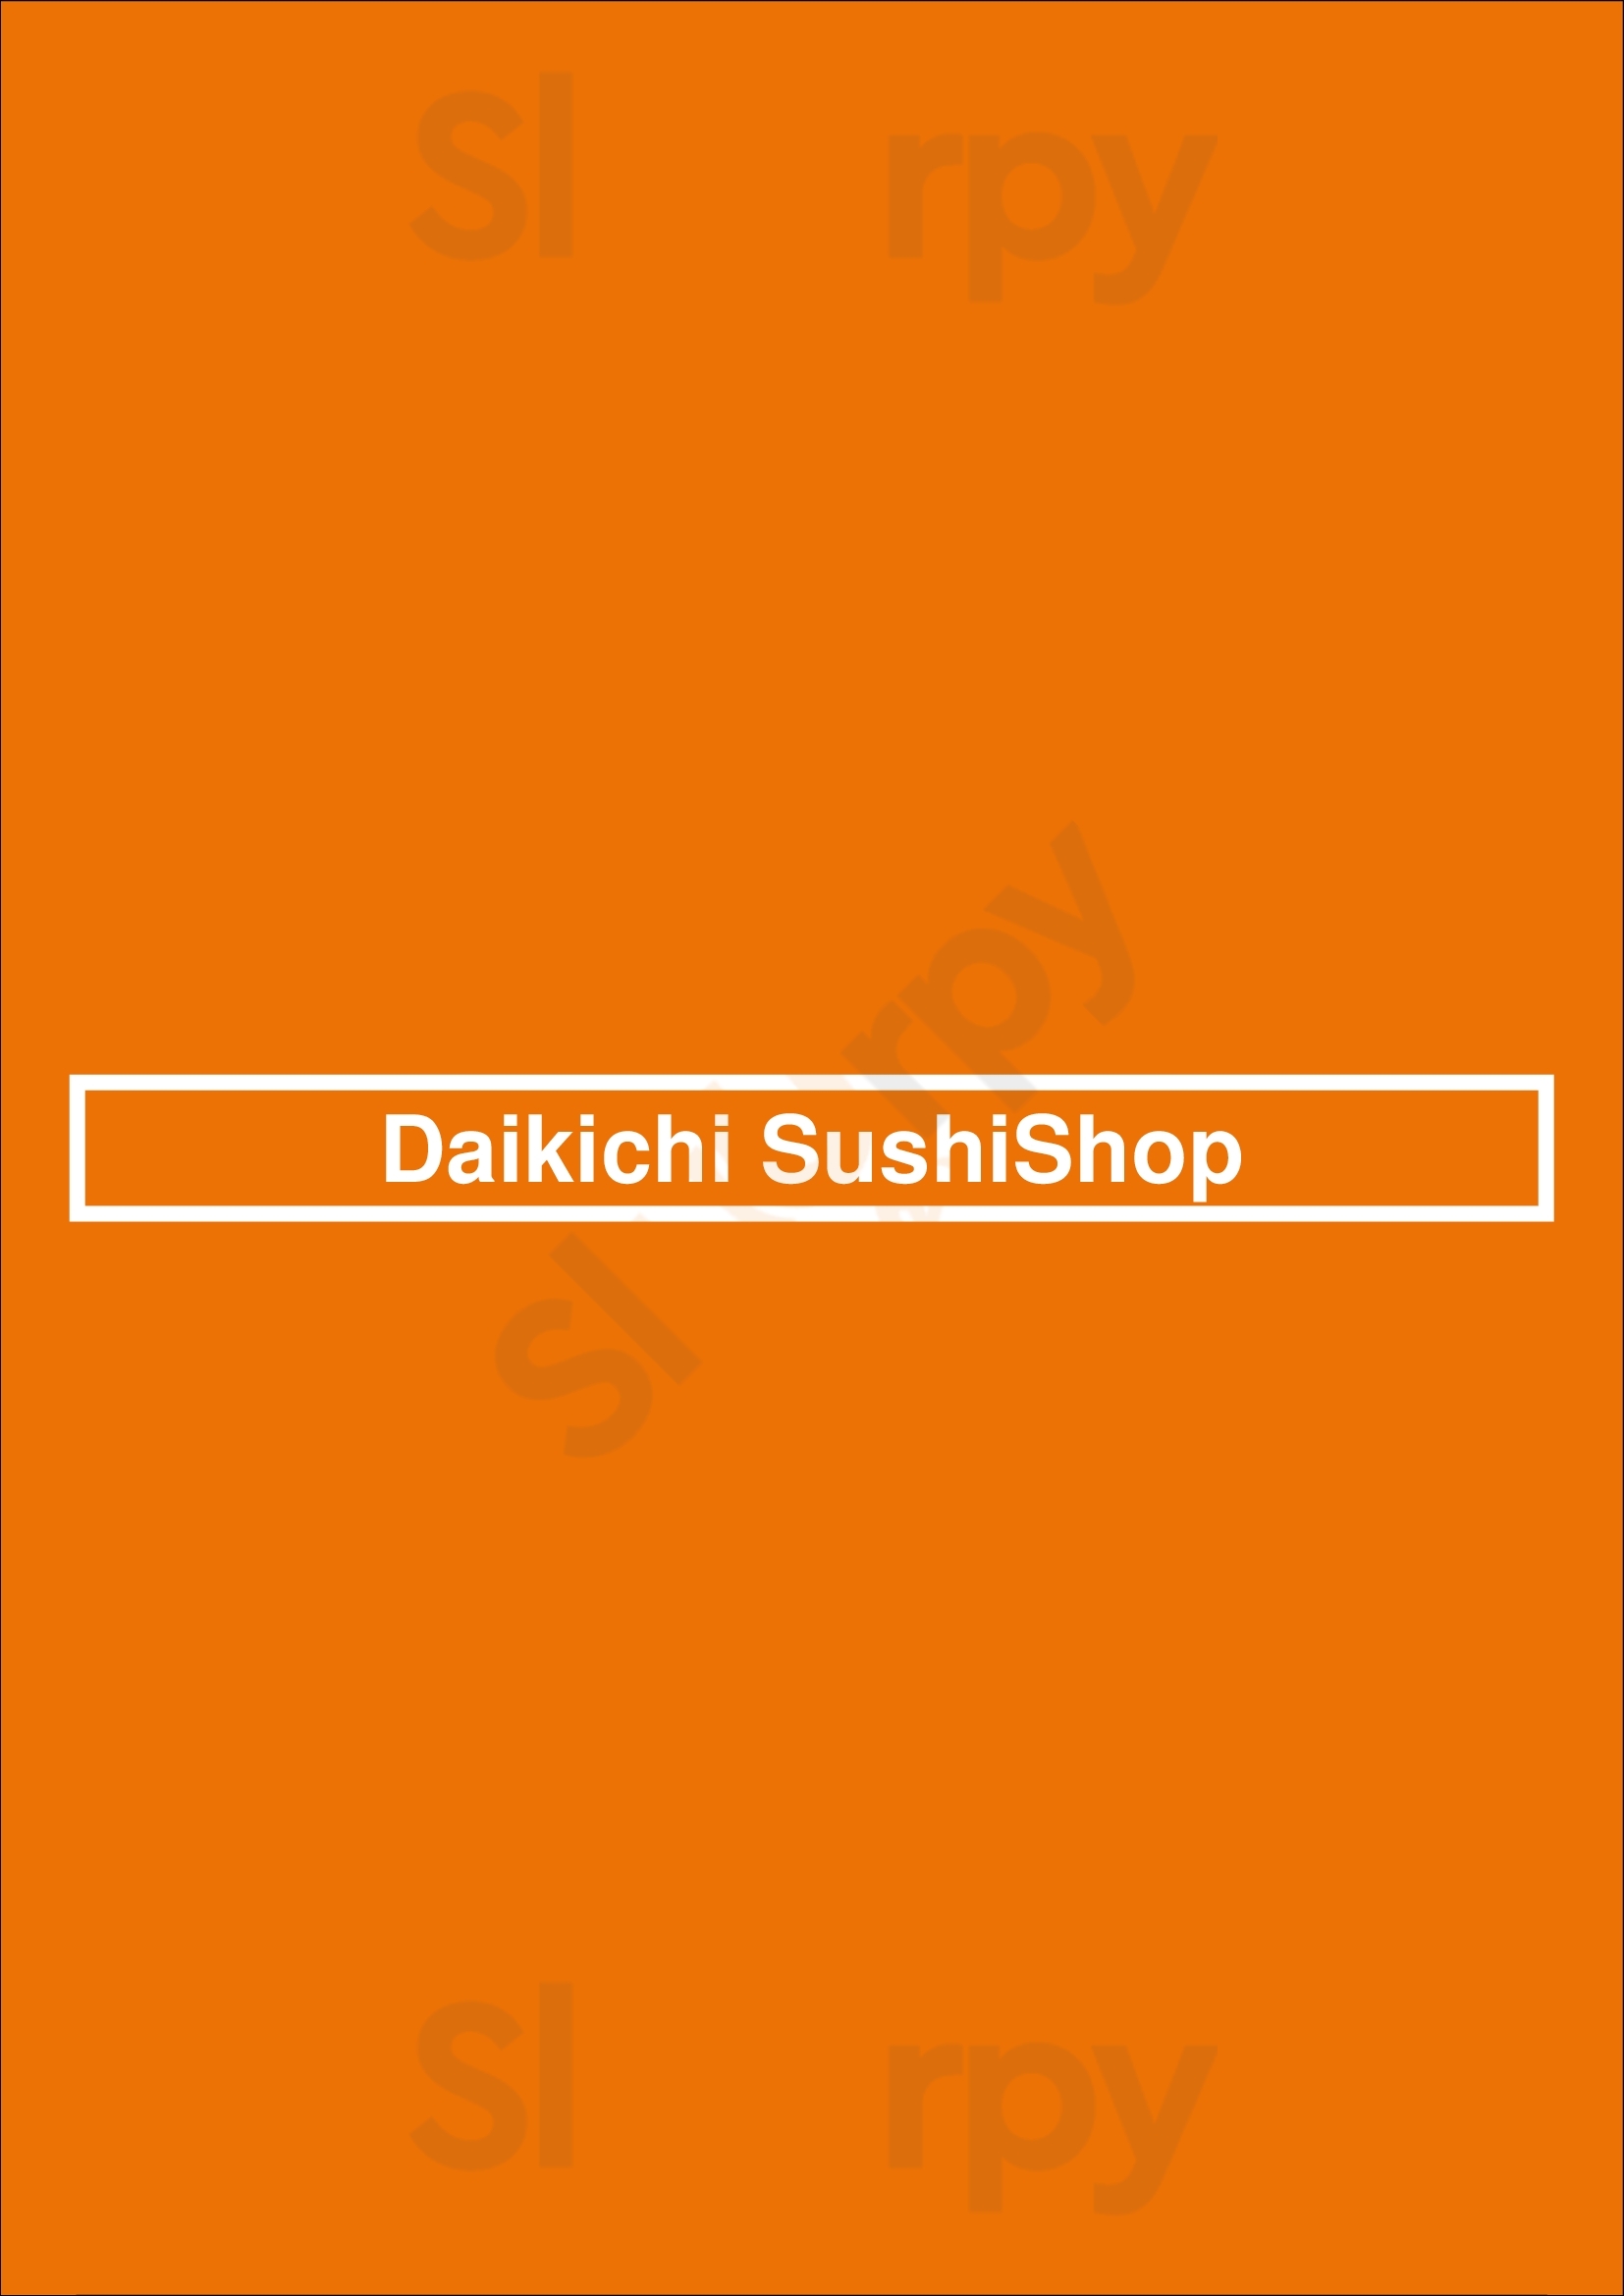 Daikichi Sushi Shop Vancouver Menu - 1